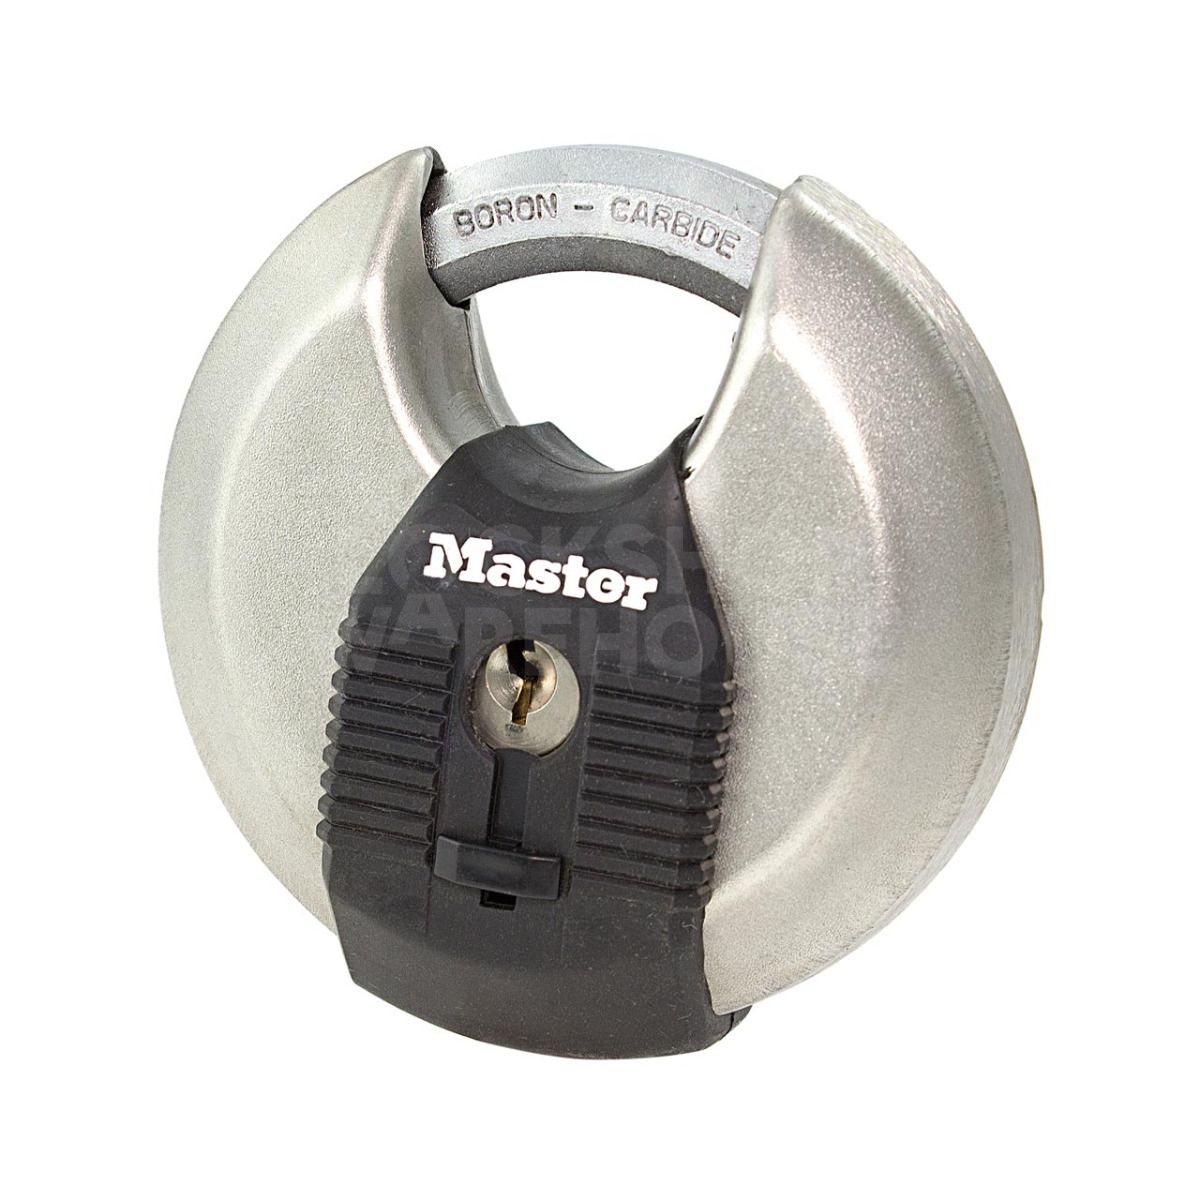 Masterlock 50MEURD Stainless Steel Padlock 80mm